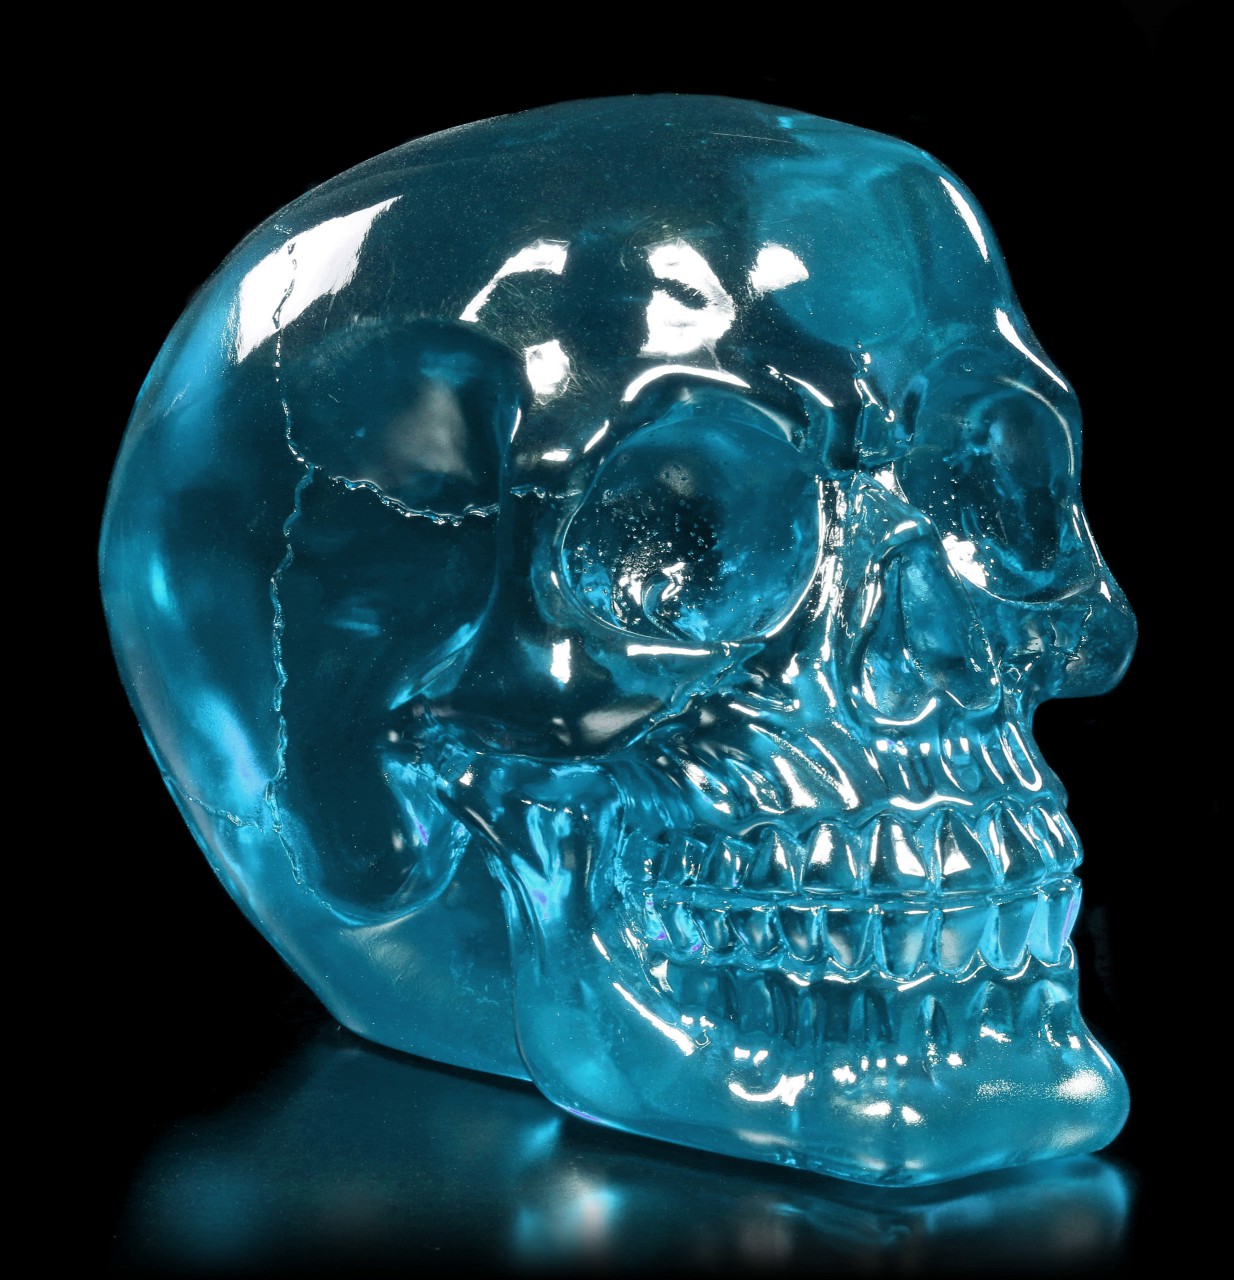 Translucent Skull teal - Dragon Blood Skull